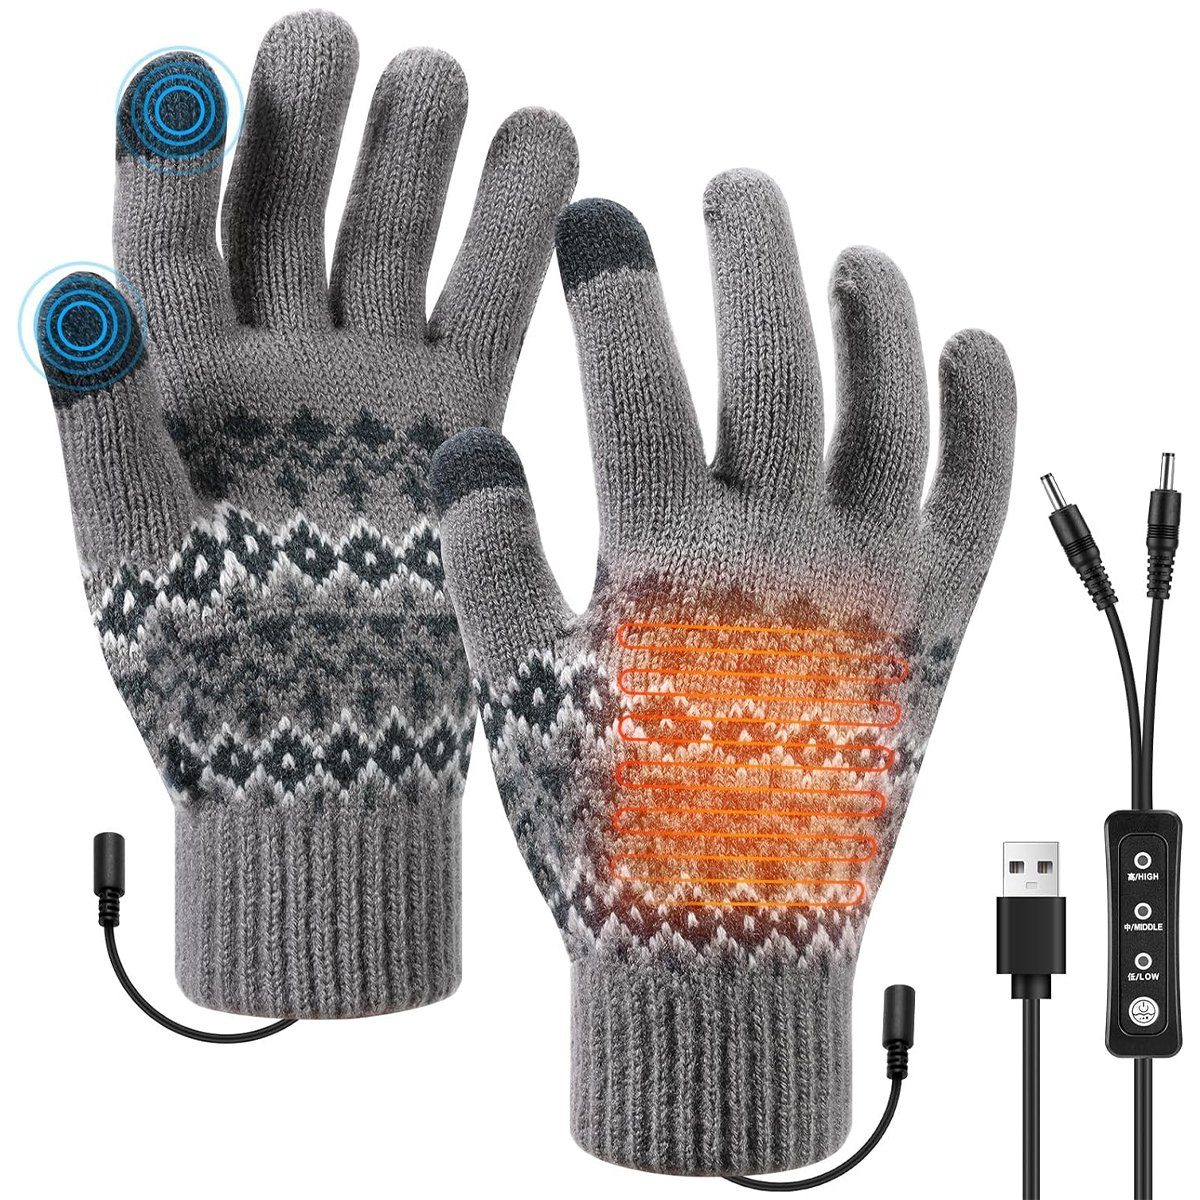 Welikera Winter-Arbeitshandschuhe Beheizbare Handschuhe mit Schalter,3-stufige Temperatureinstellung Grau